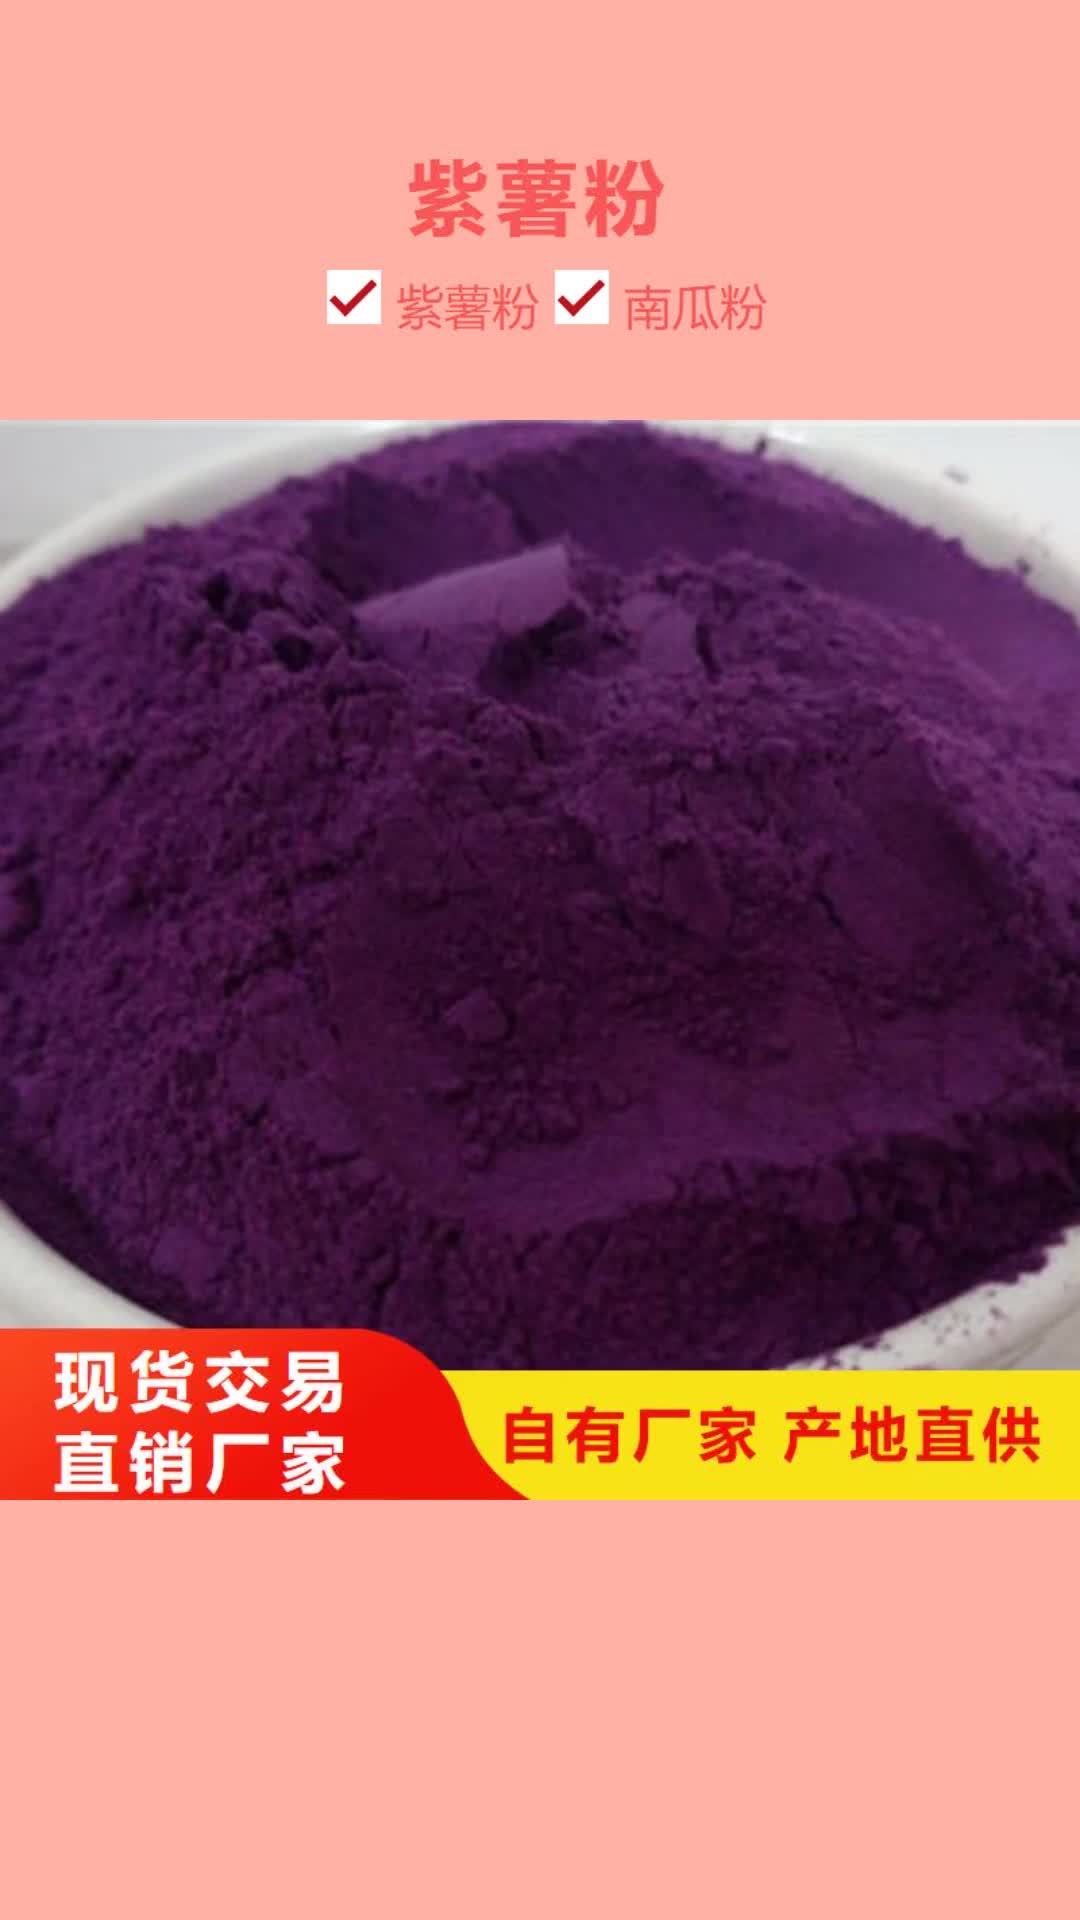 江西【紫薯粉】灵芝拒绝伪劣产品